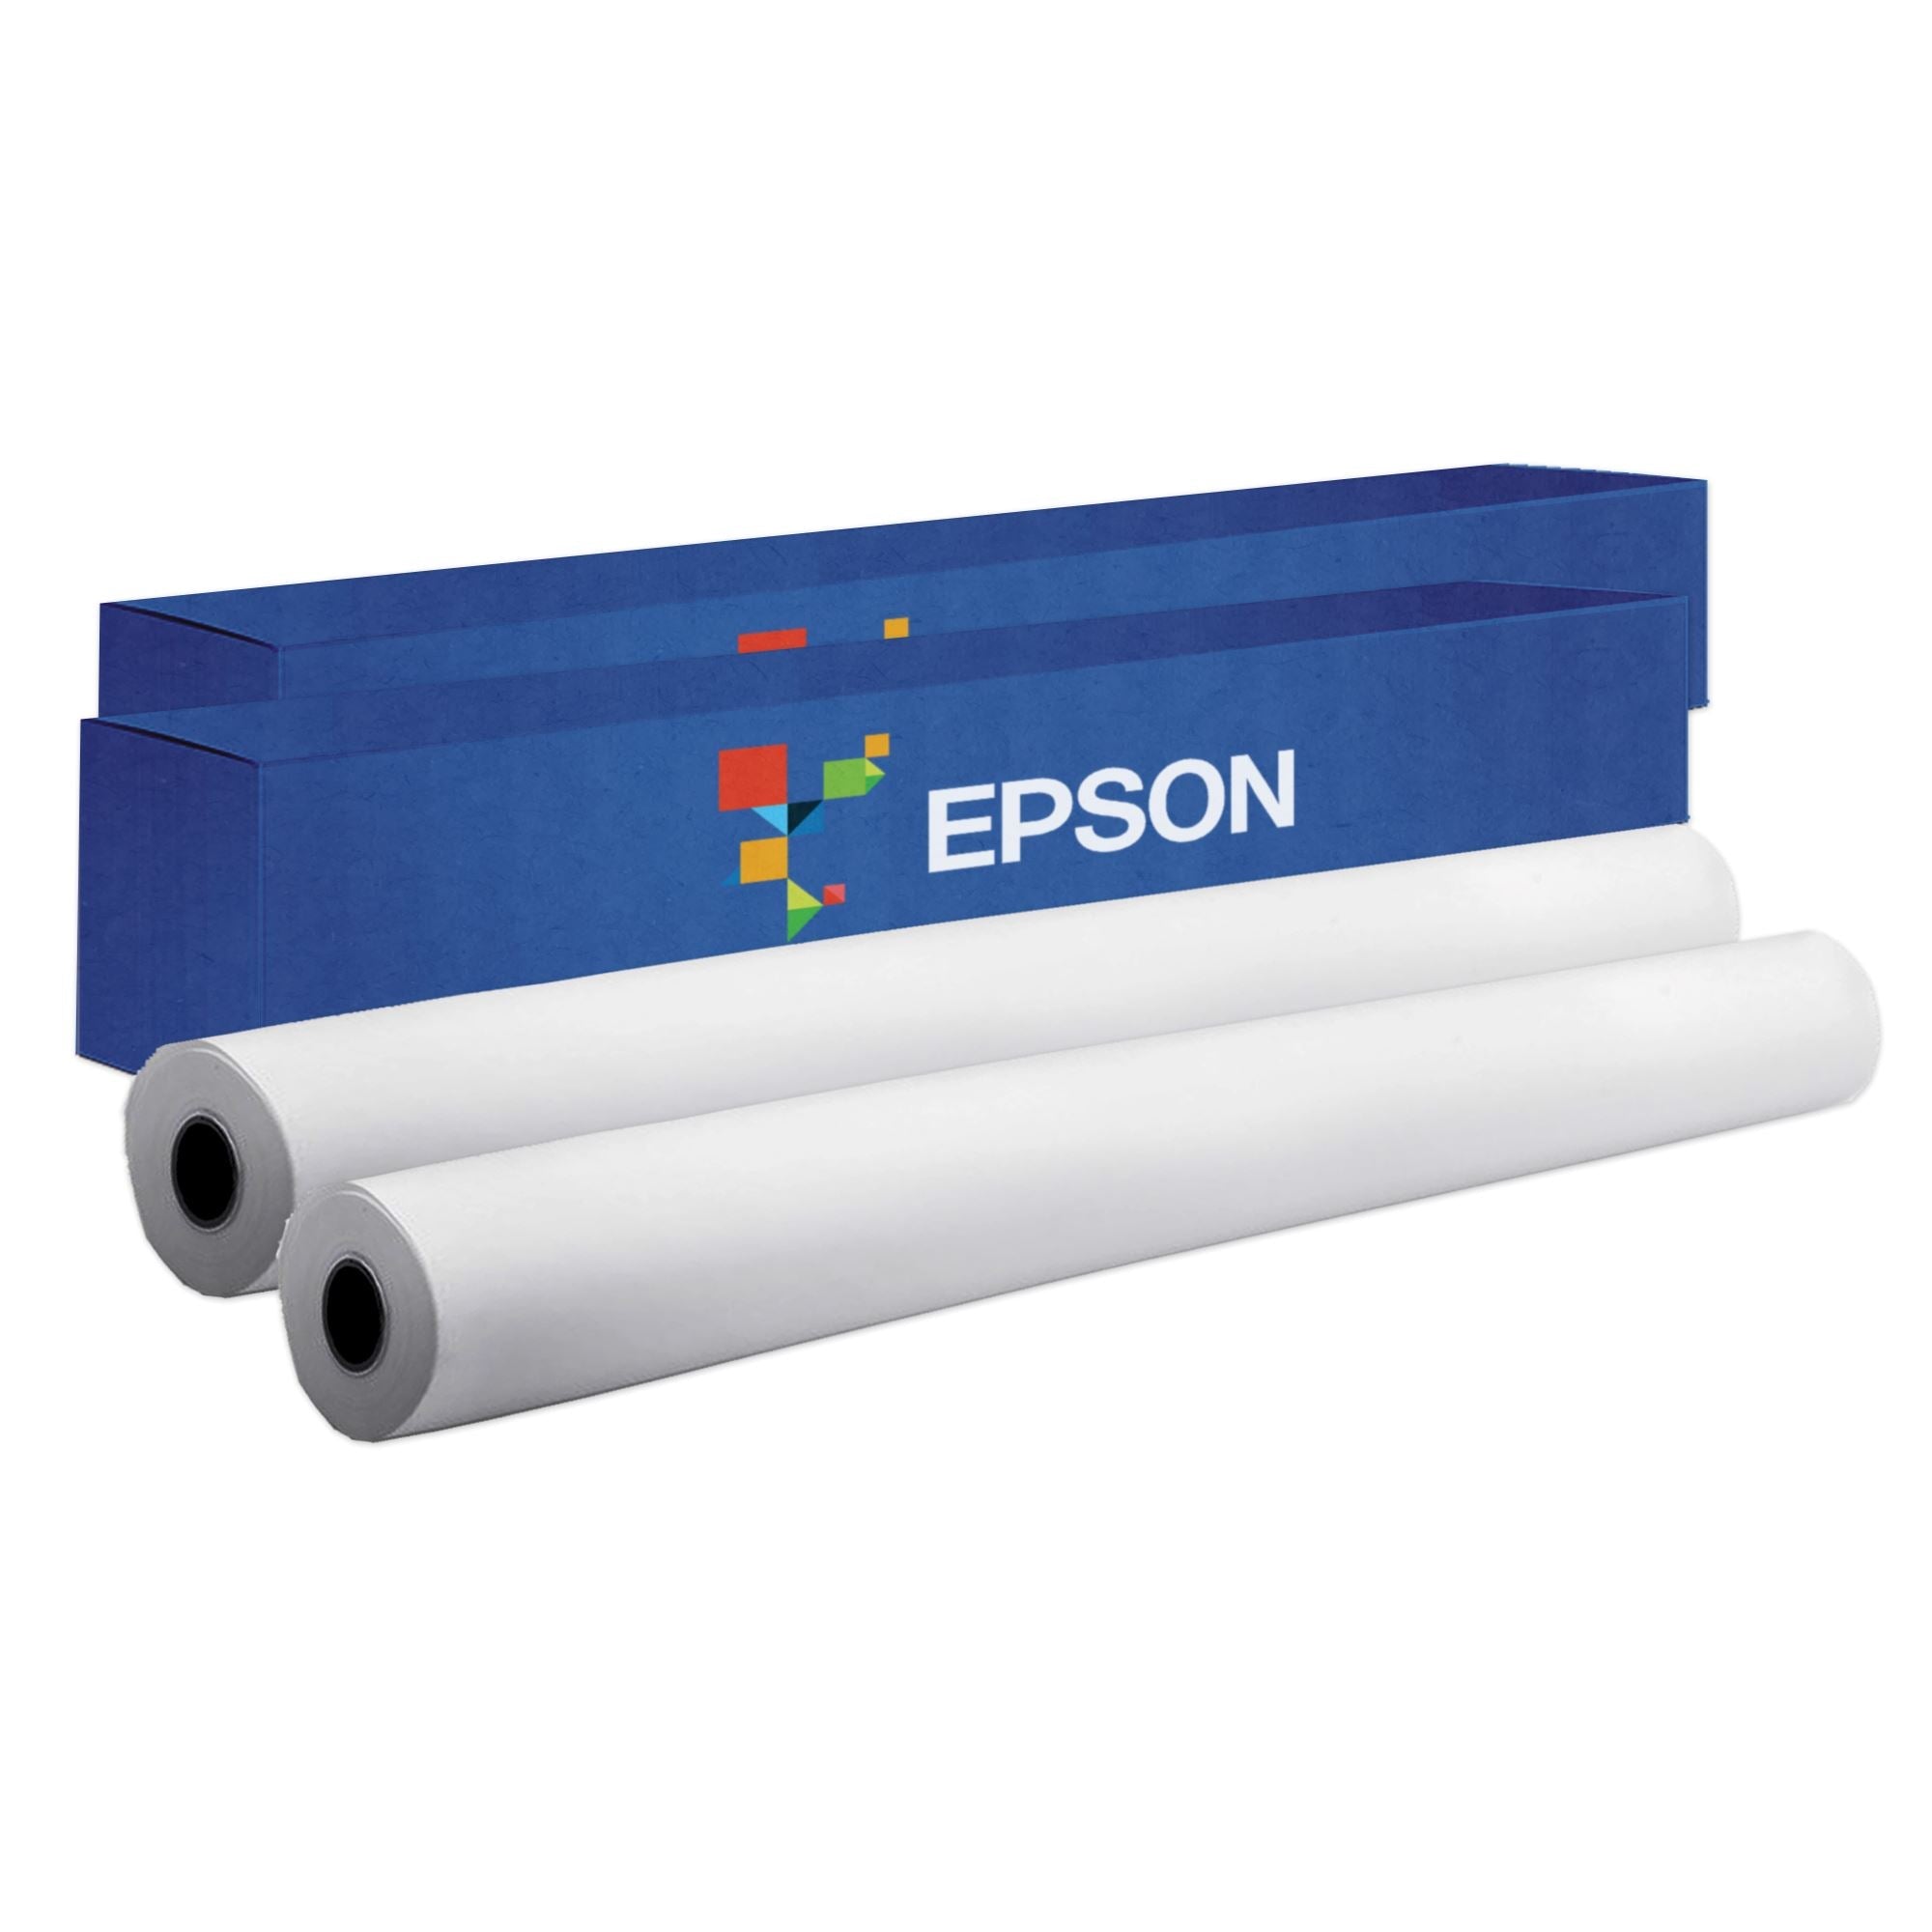 Pakor. Epson SureColor F6370 Production Edition 44 Dye Sublimation Large  Format Printer